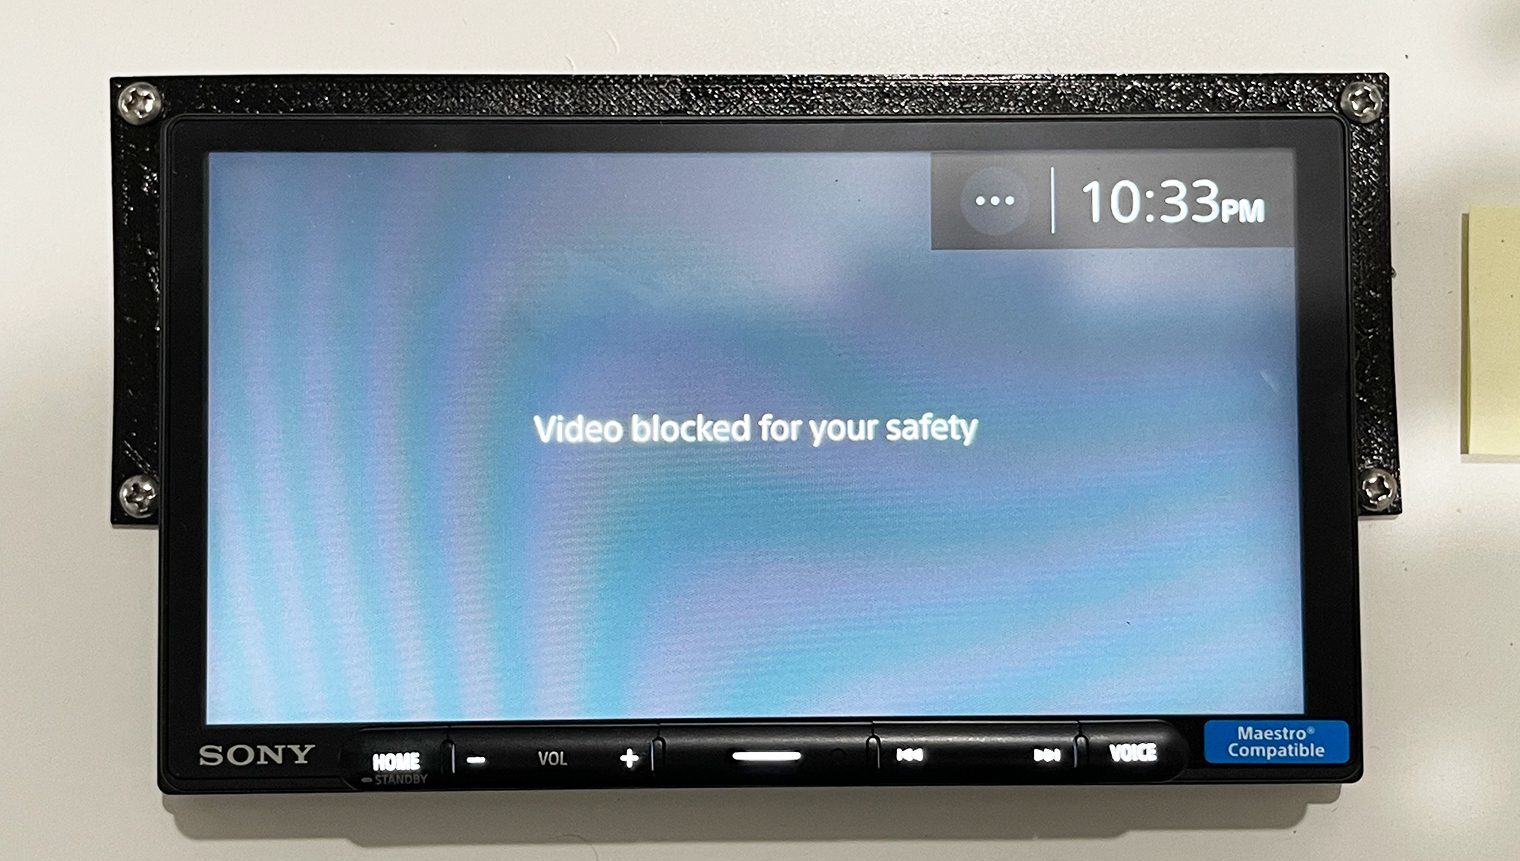 Sony XAV-AX6000 video blocked for safety